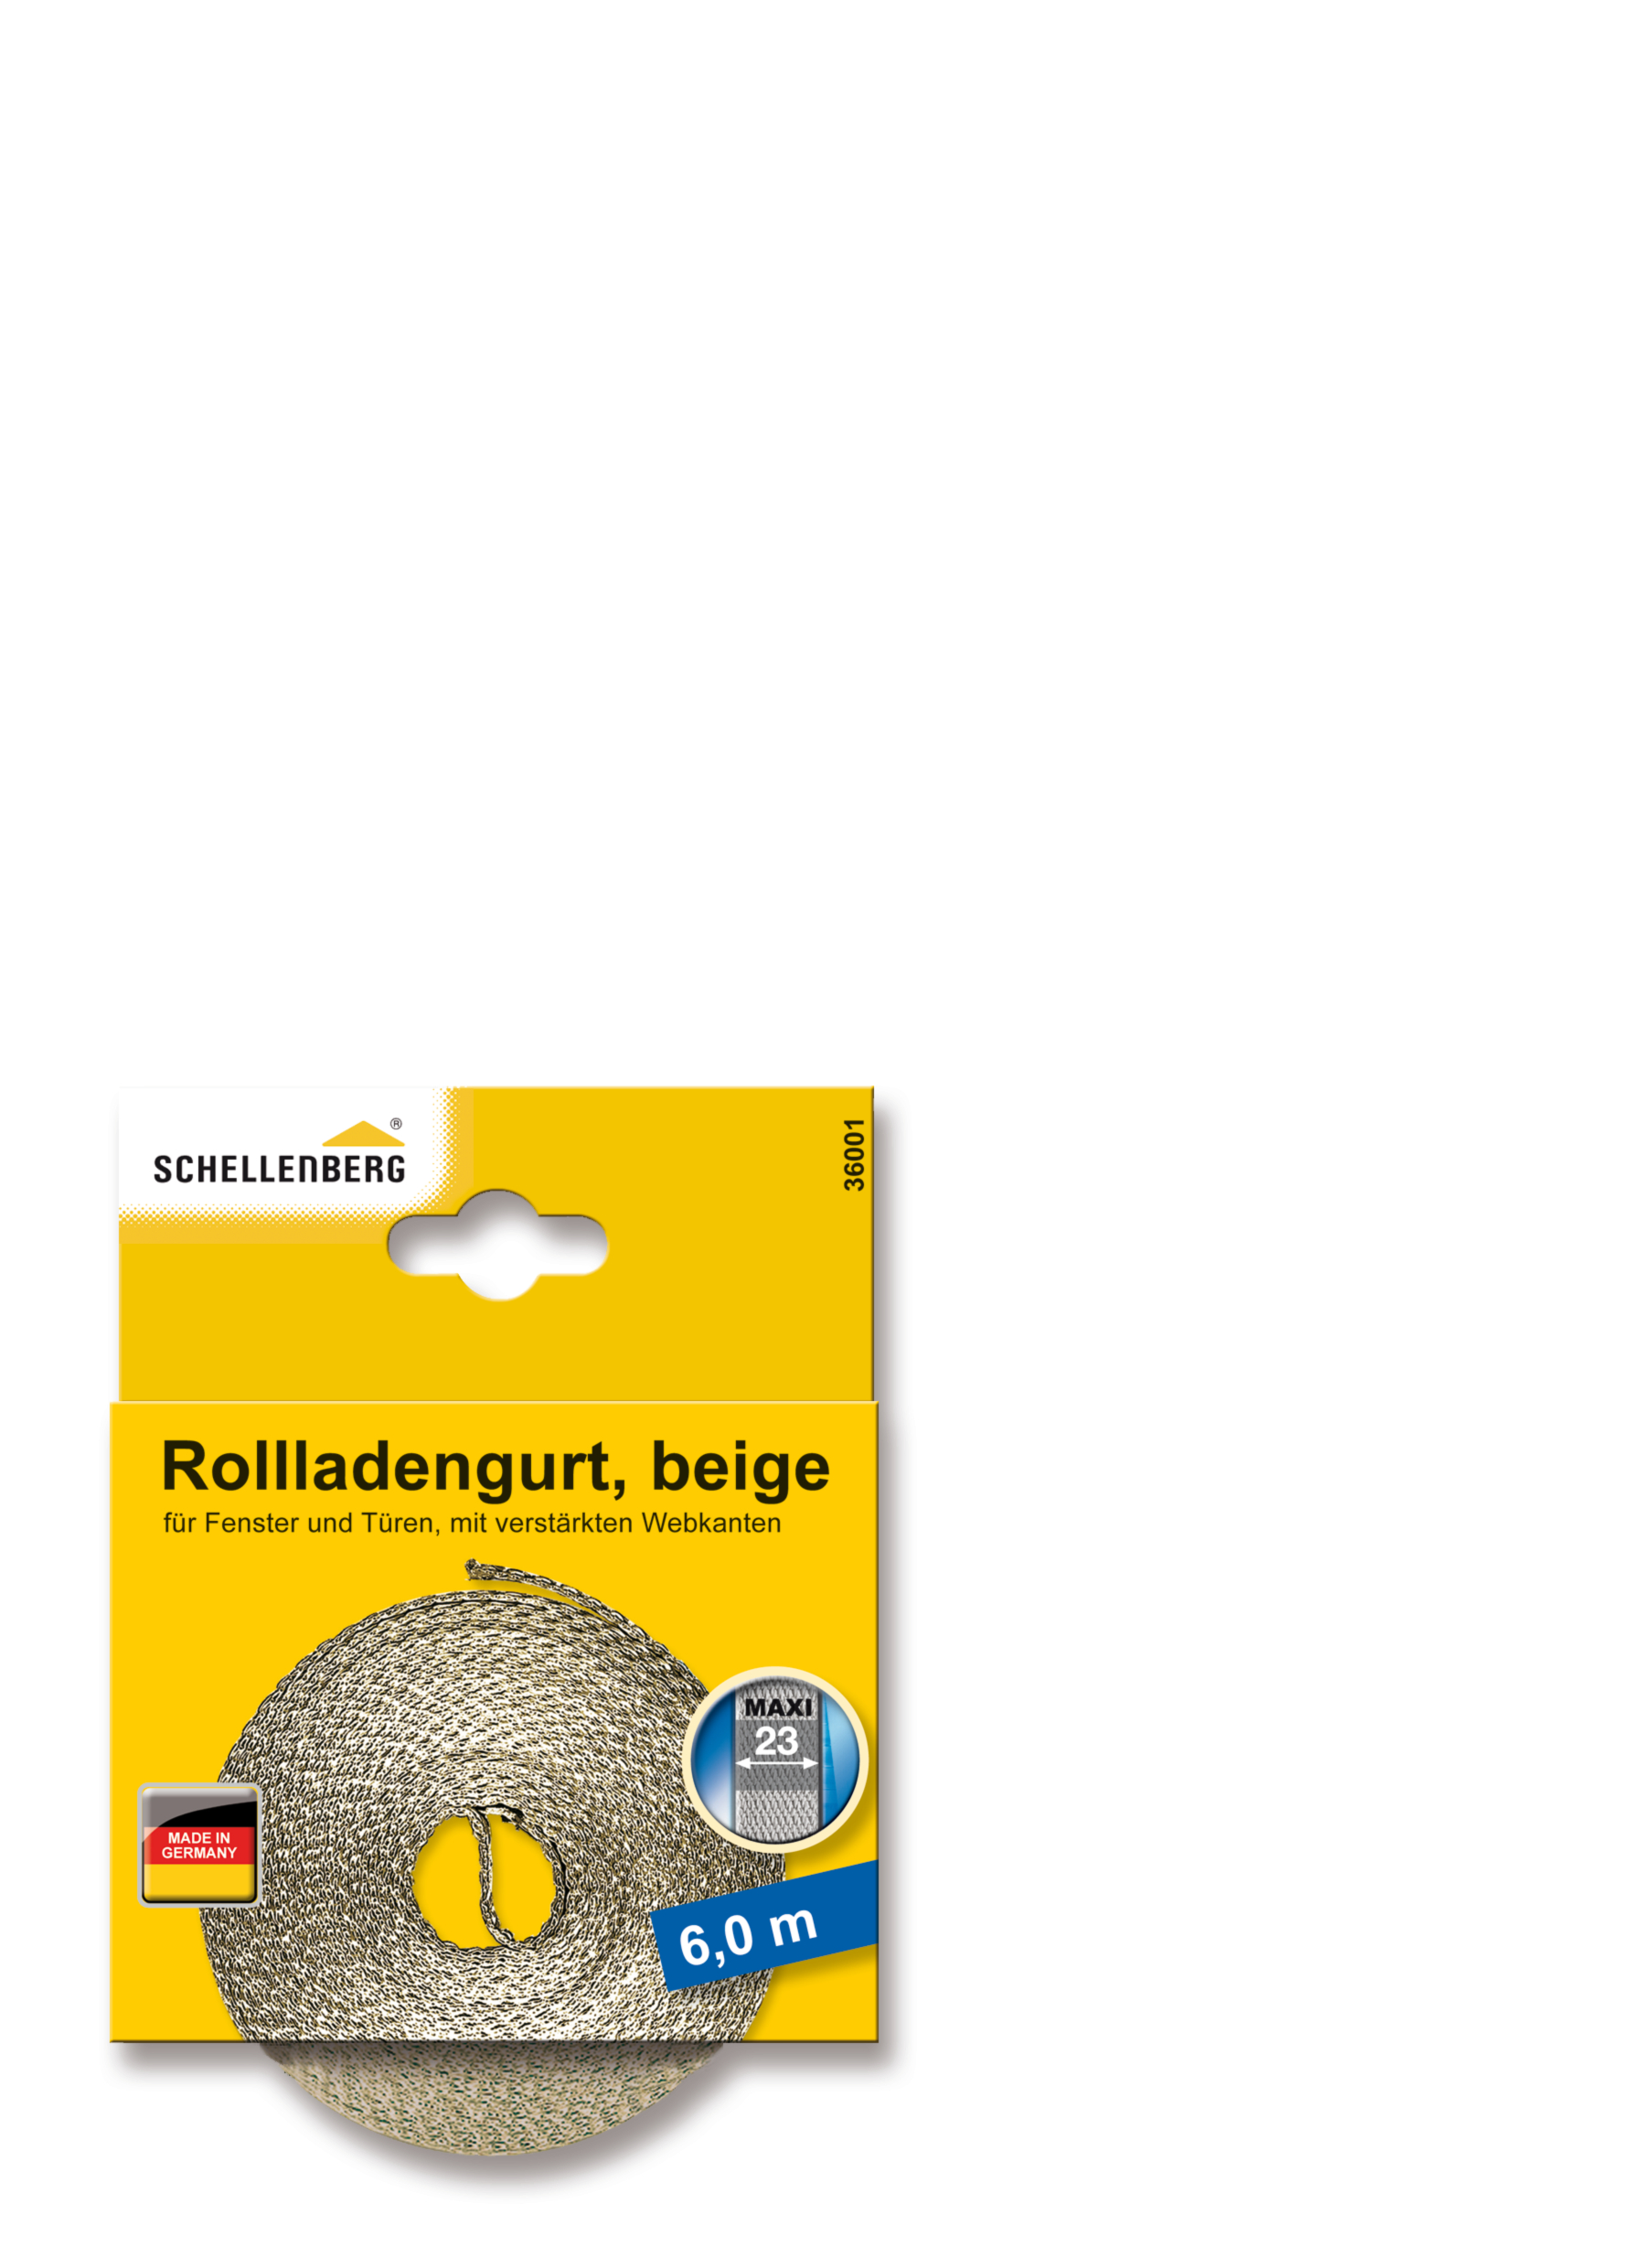 SCHELLENBERG Rollladengurt 23 mm/6,0 m beige 